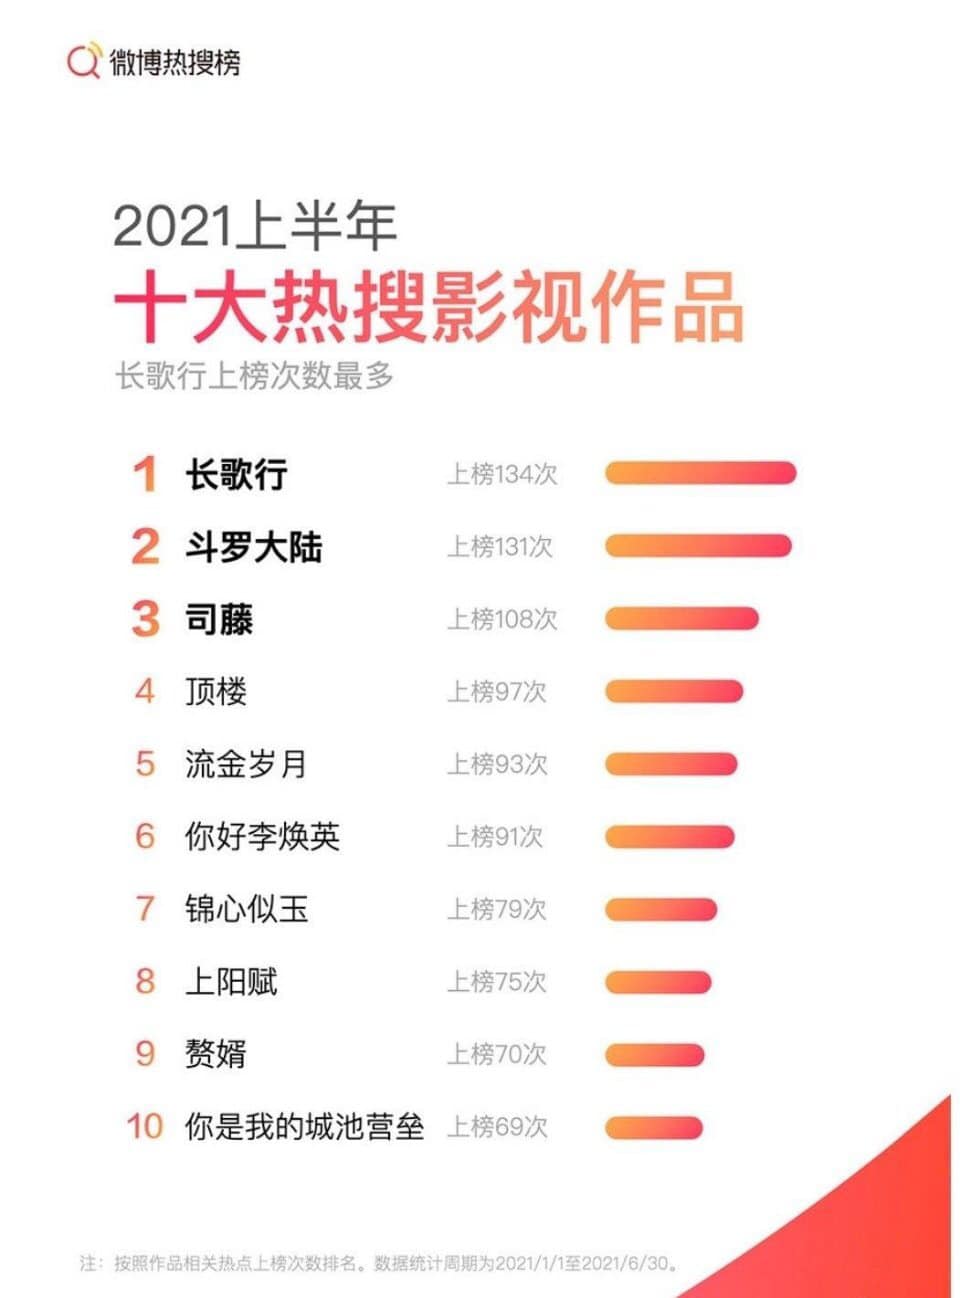 Thống kê tìm kiếm hot trên weibo cho năm 2021 đầu tiên  nửa đường: Tiêu Chiến, Nhất Bác giành vị trí thứ 5 chung cuộc